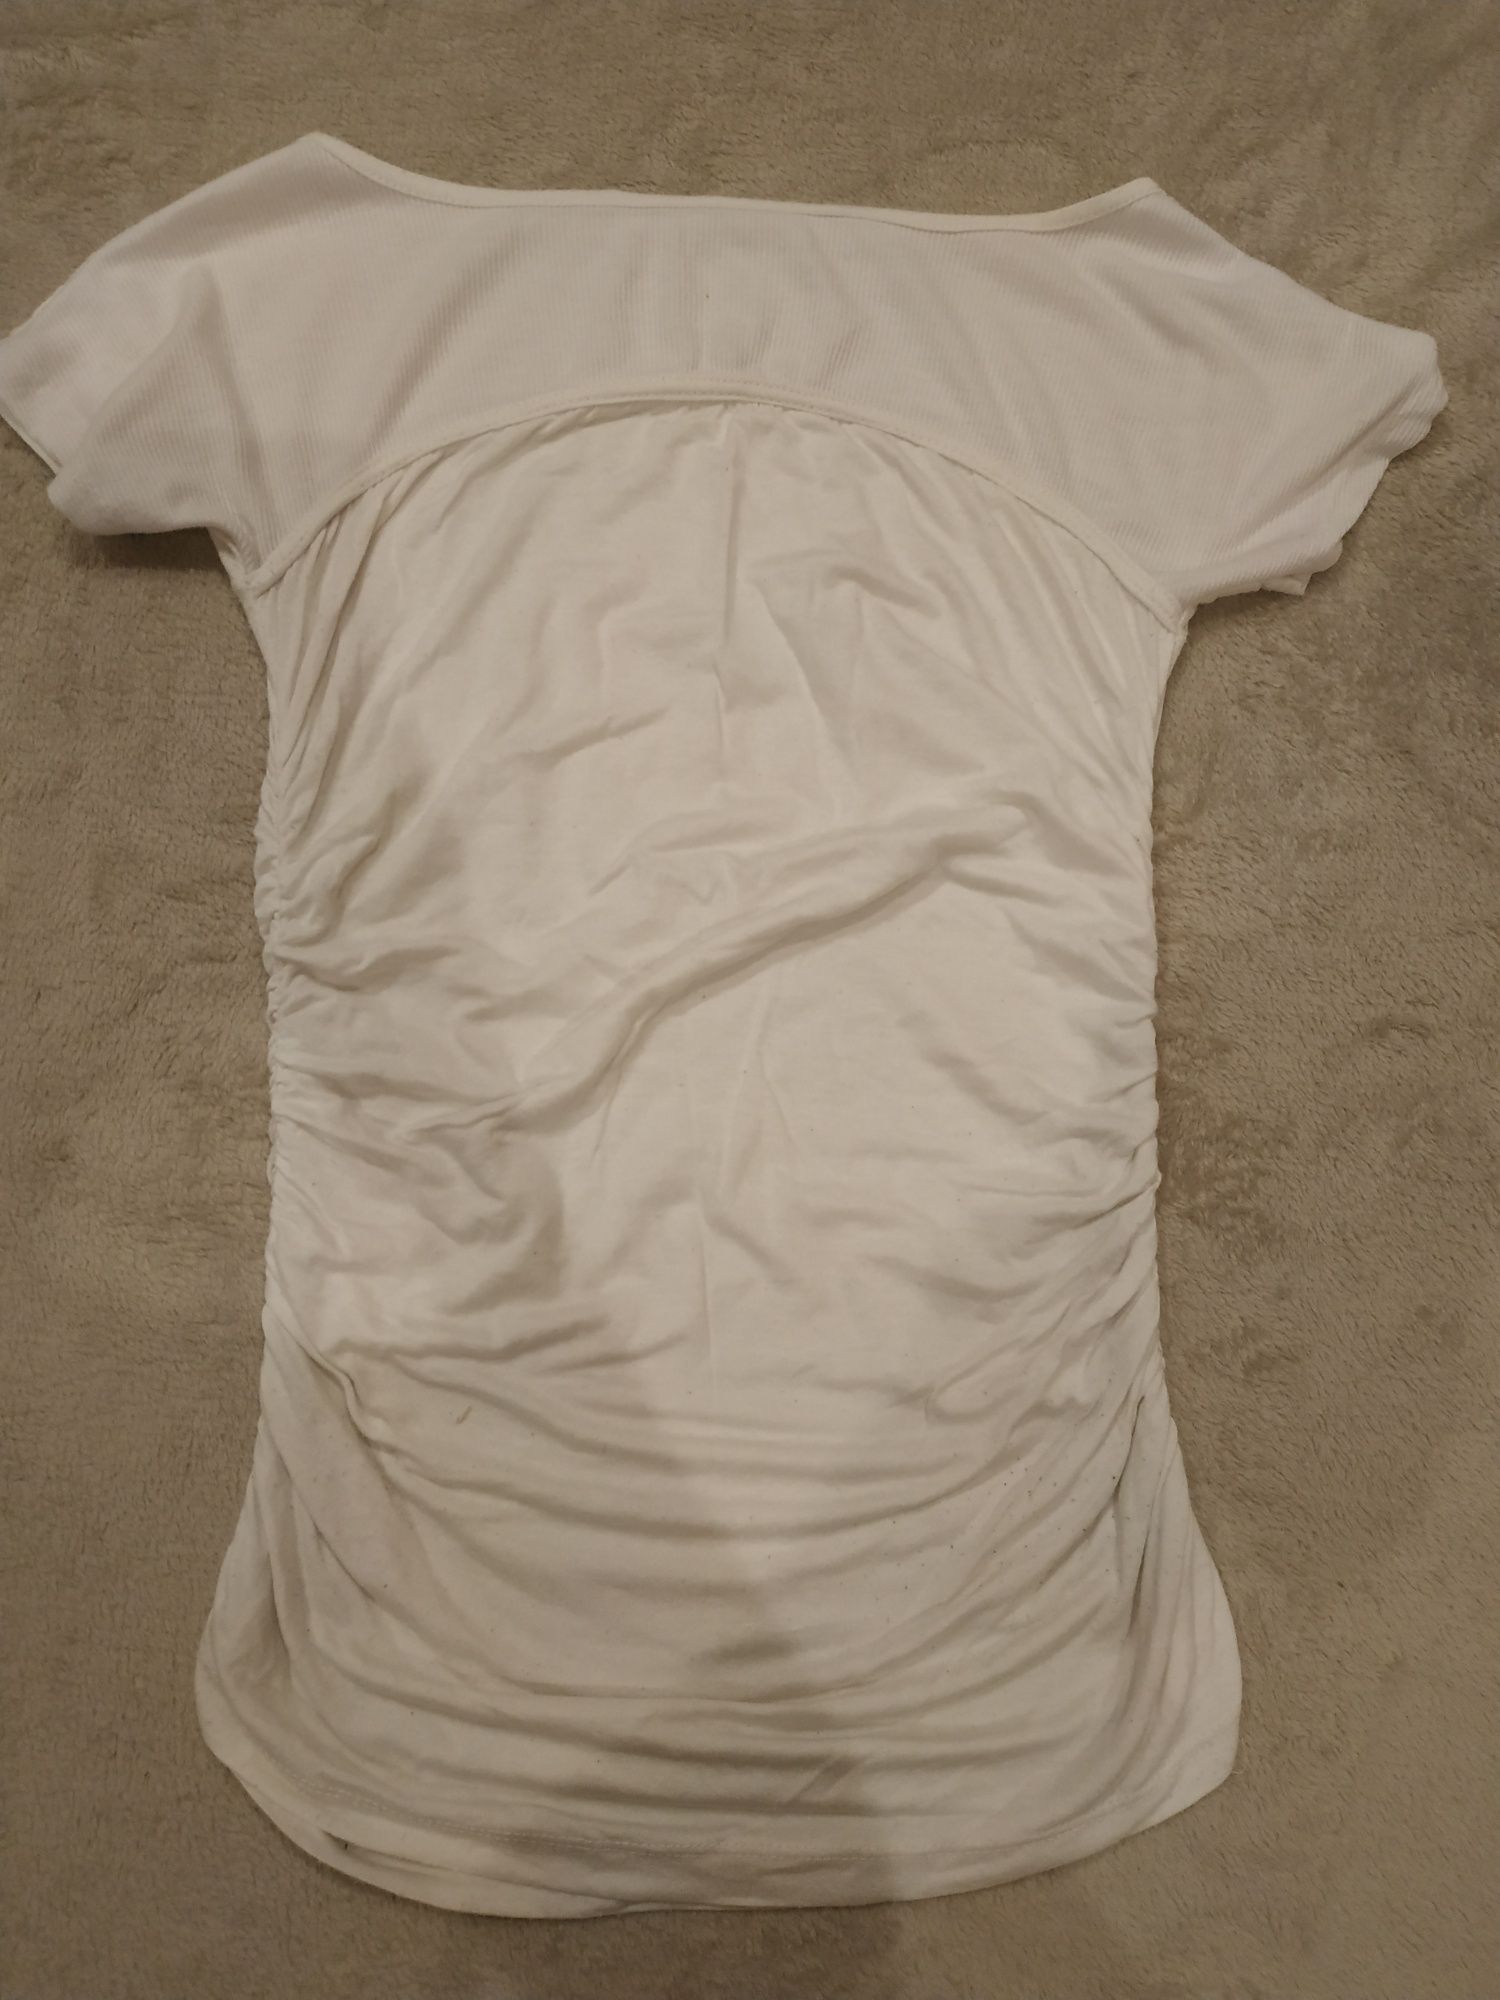 Koszulka z marszczeniem, bluzka krótki rękaw, r. S/XS 34-36